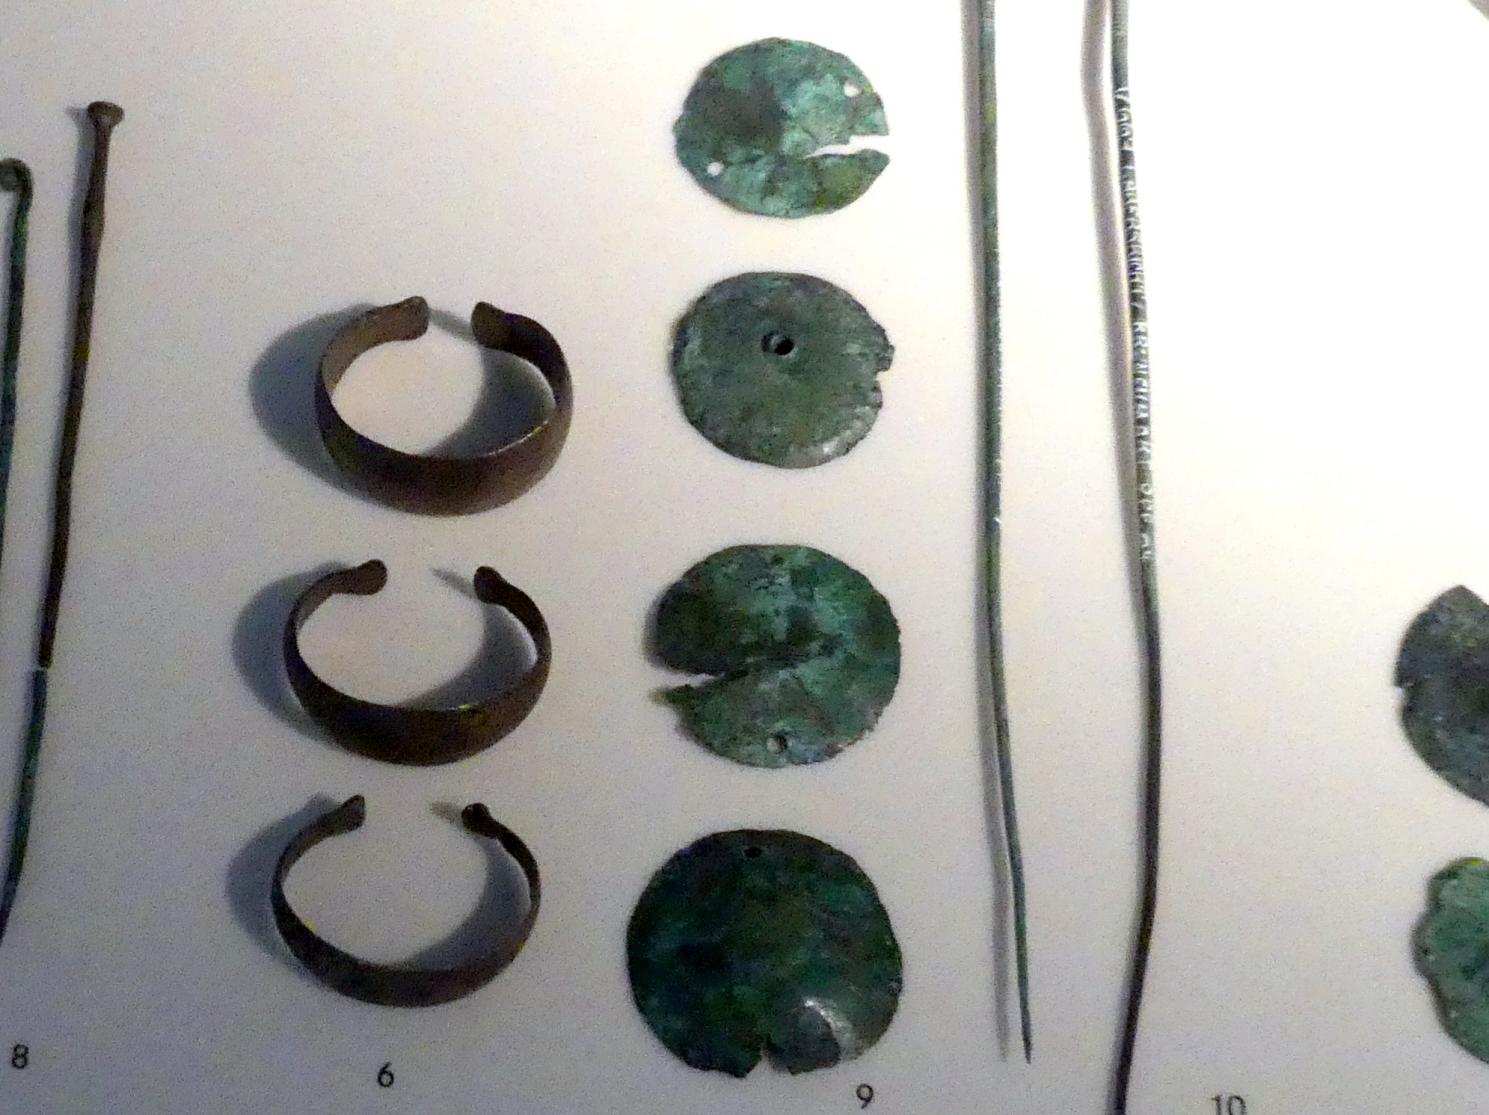 Zierscheiben, ziseliert, Mittlere Bronzezeit, 3000 - 1300 v. Chr., 1600 - 1300 v. Chr.